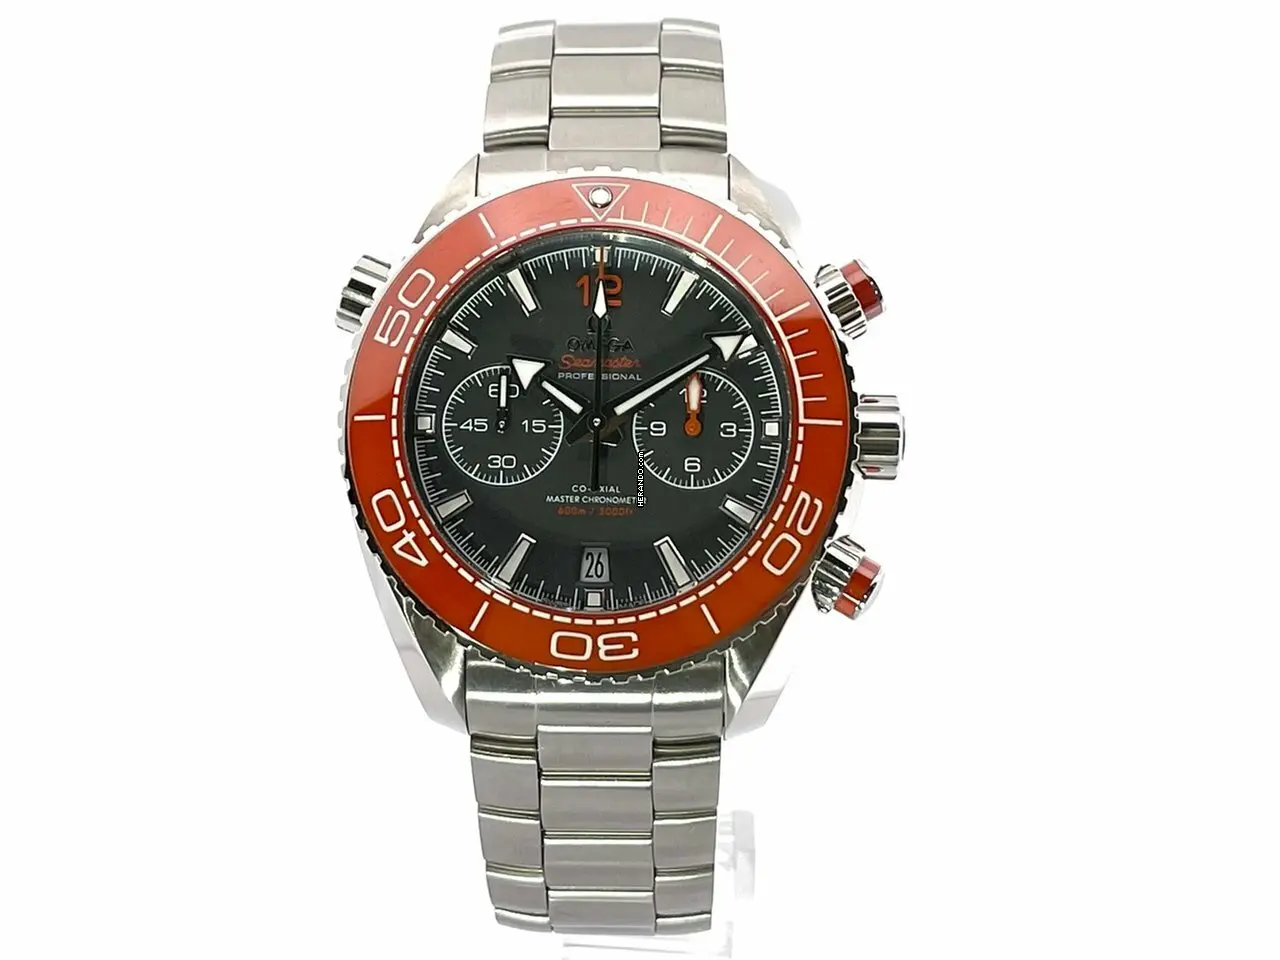 watches-200659-15337402-1tomcldu32ivjz7i5qi2ncfy-ExtraLarge.webp